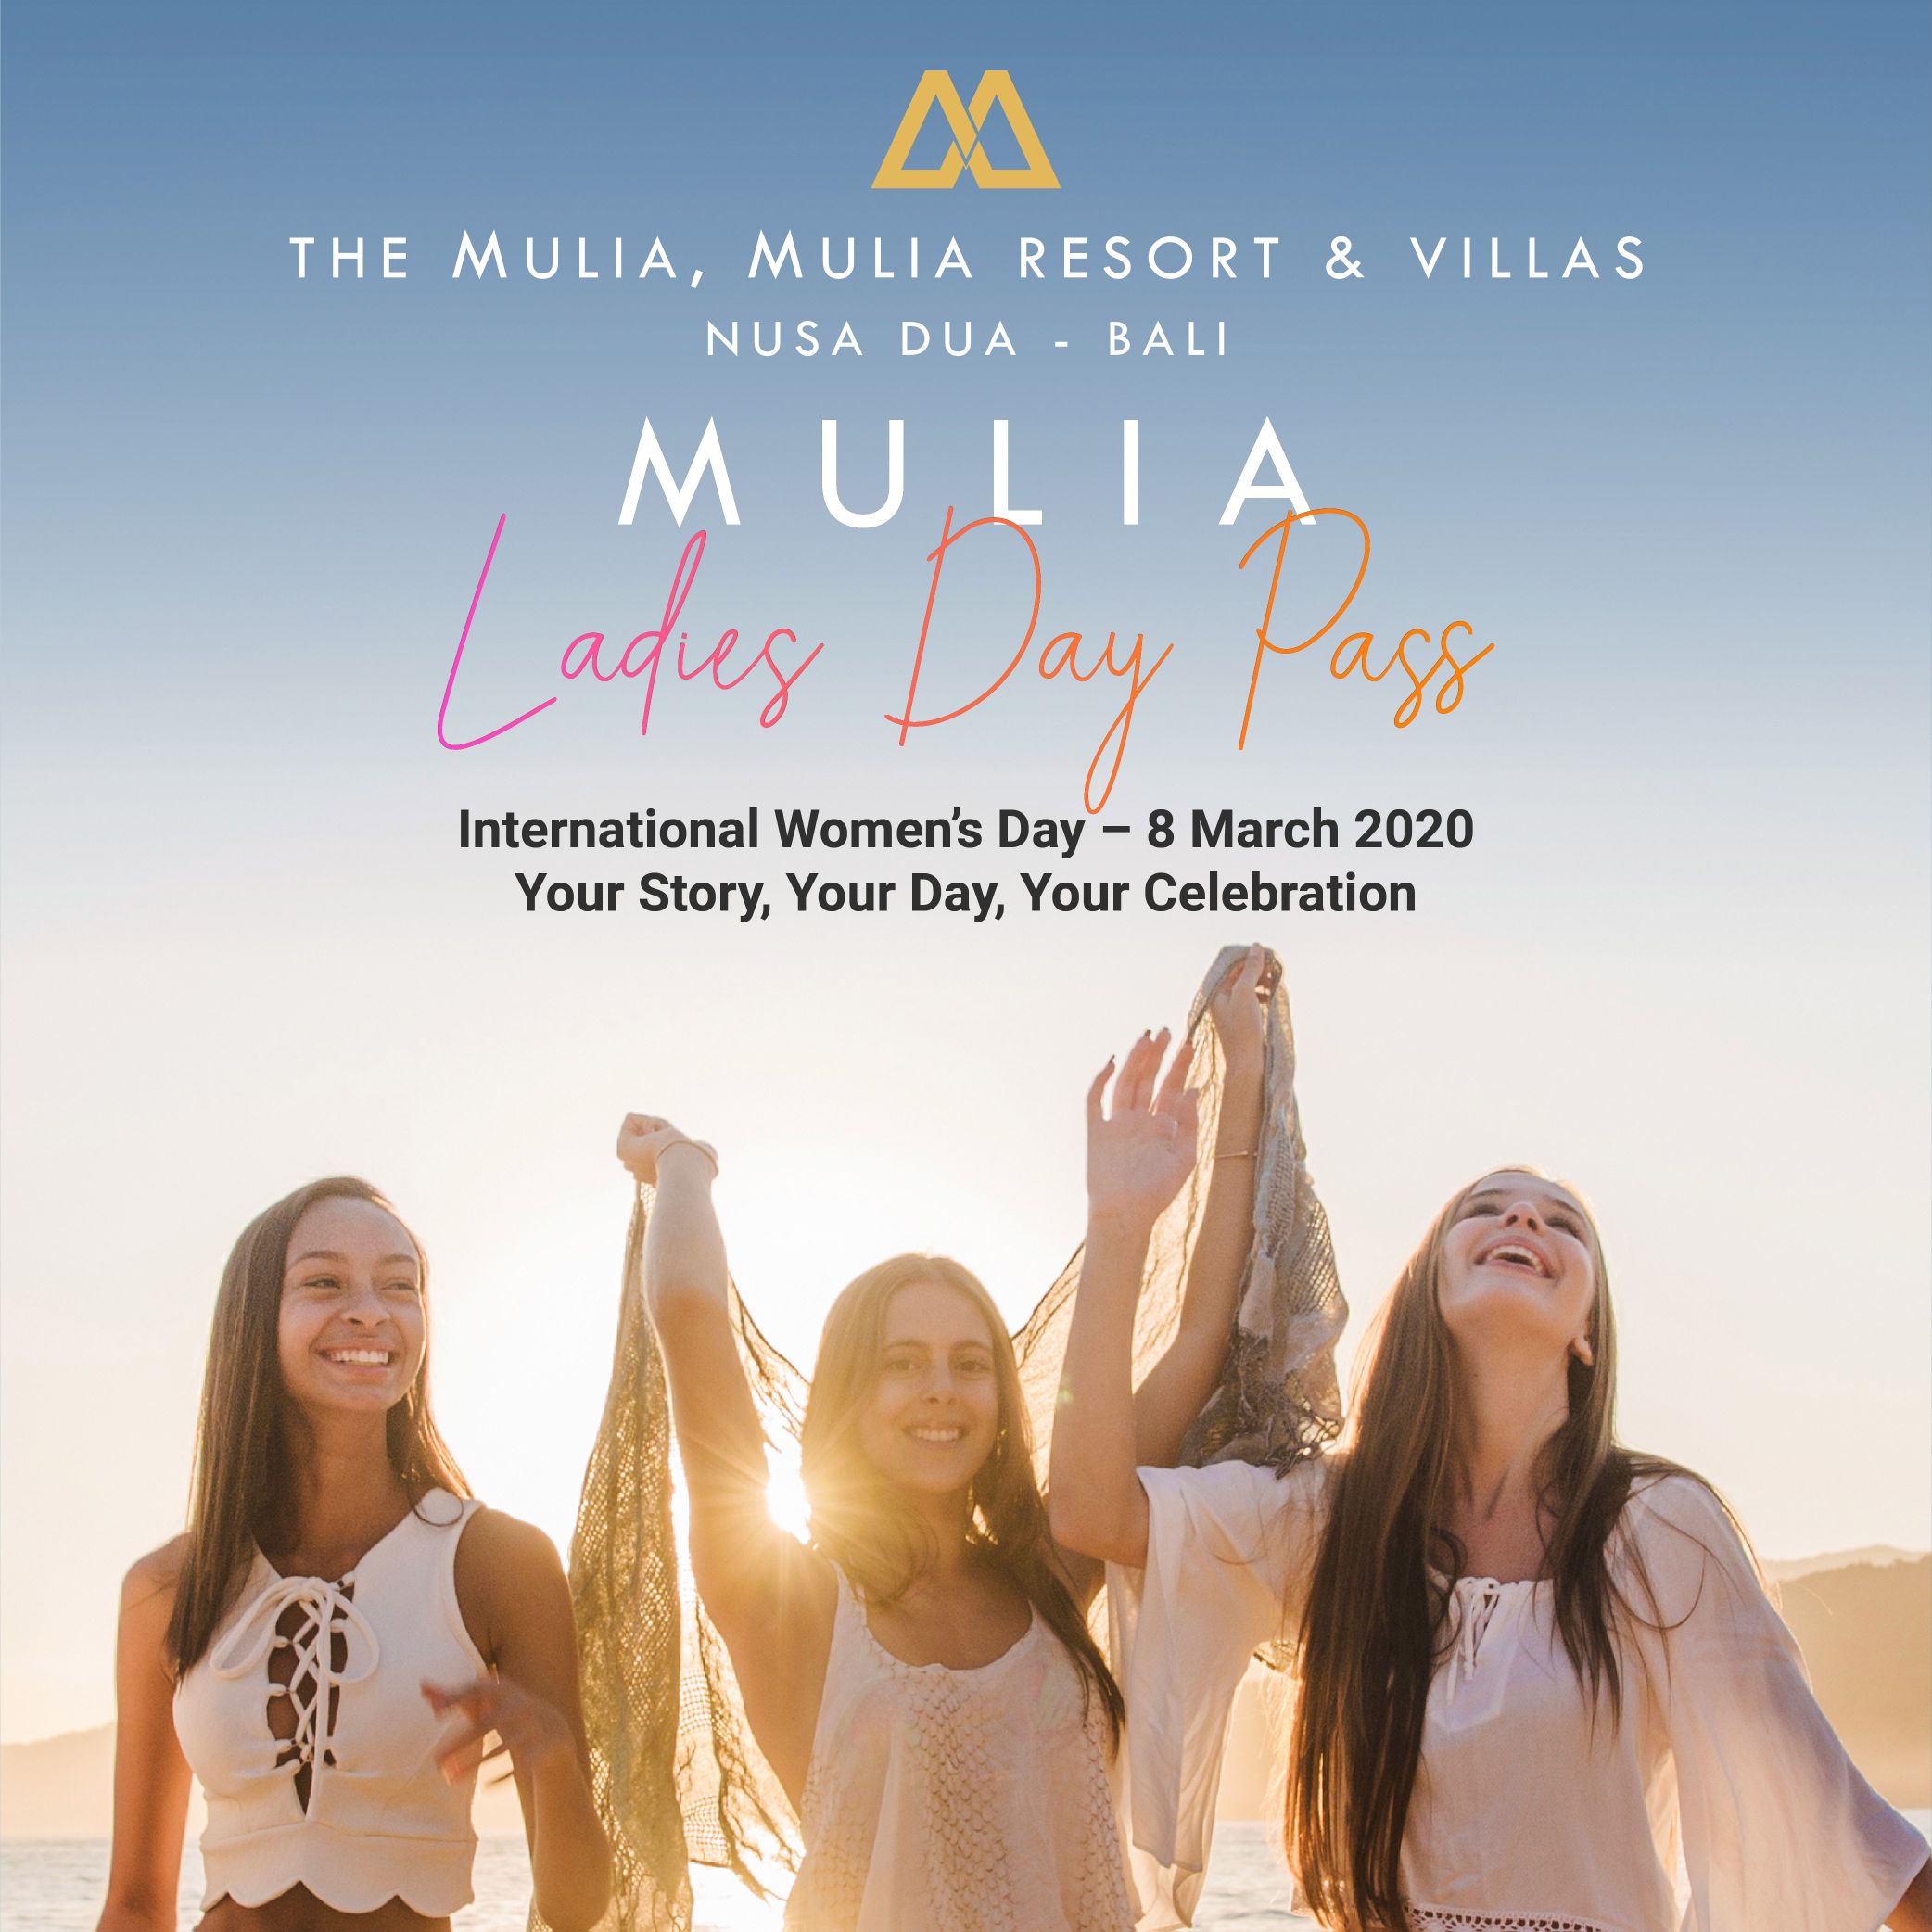 MULIA LADIES DAY PASS